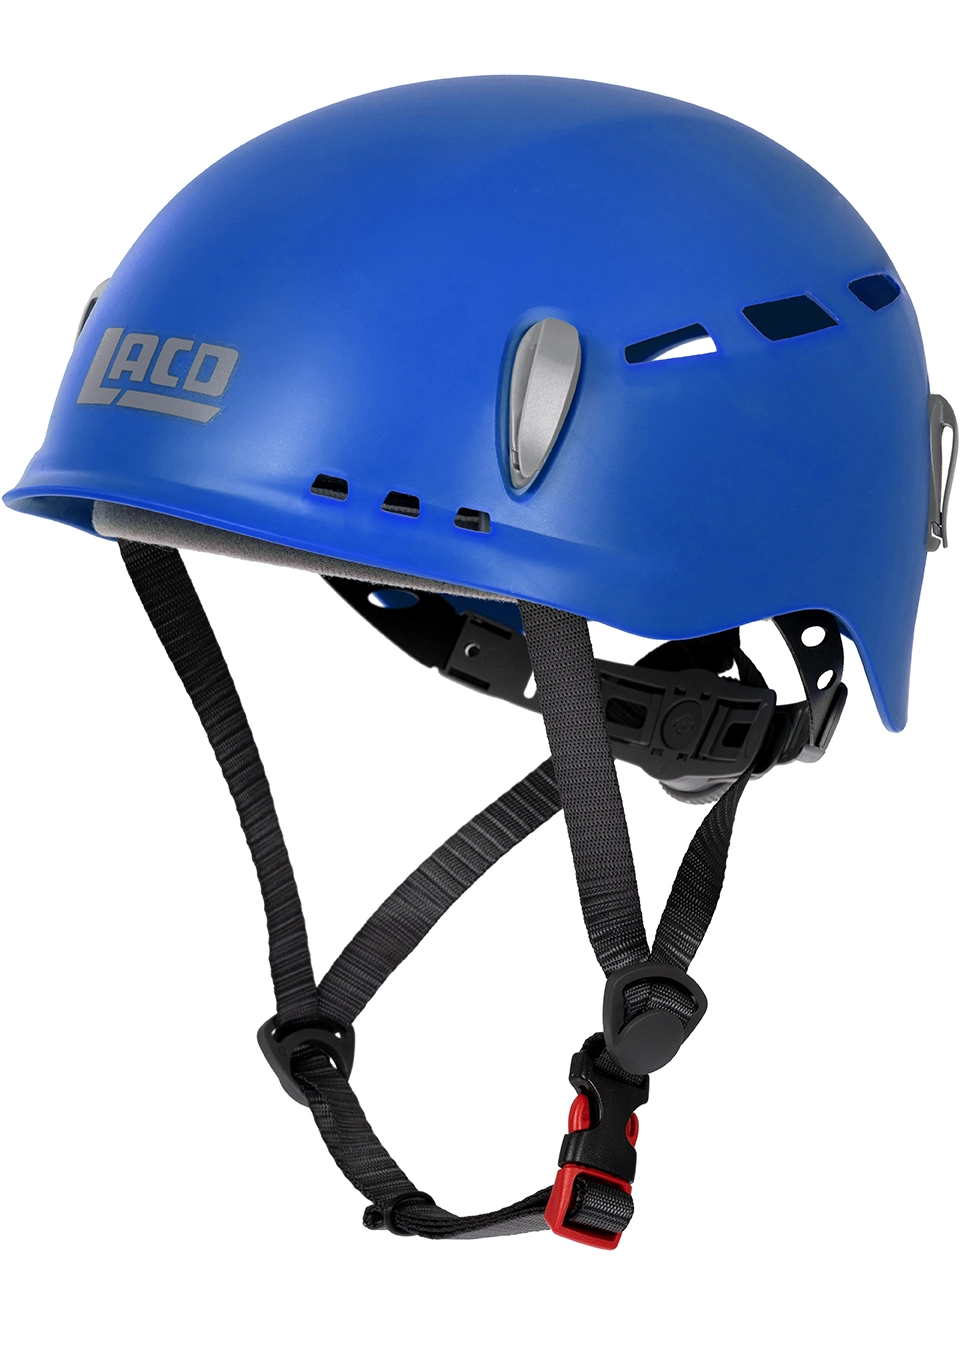 LACD Protector 2.0 Helm für Klettersteig und Klettern